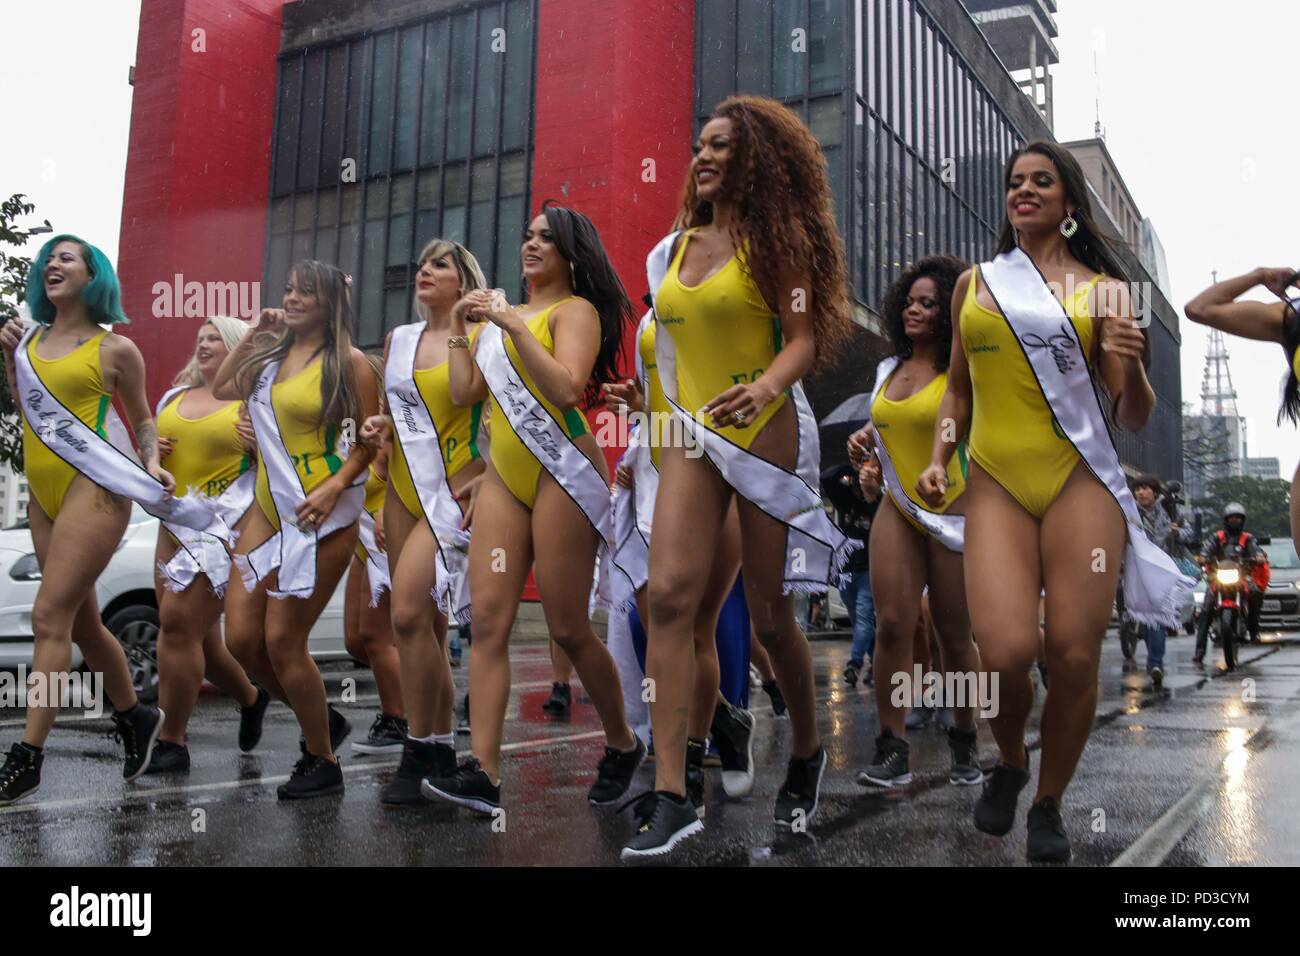 Sao Paulo, Brasilien. 6 Aug, 2018. Miss Bum Bum Brasilien contest Kandidaten zeigen ihre Attribute in einer Parade, die an der Avenida Paulista Credit: Dario Oliveira/ZUMA Draht/Alamy Leben Nachrichten nahm Stockfoto